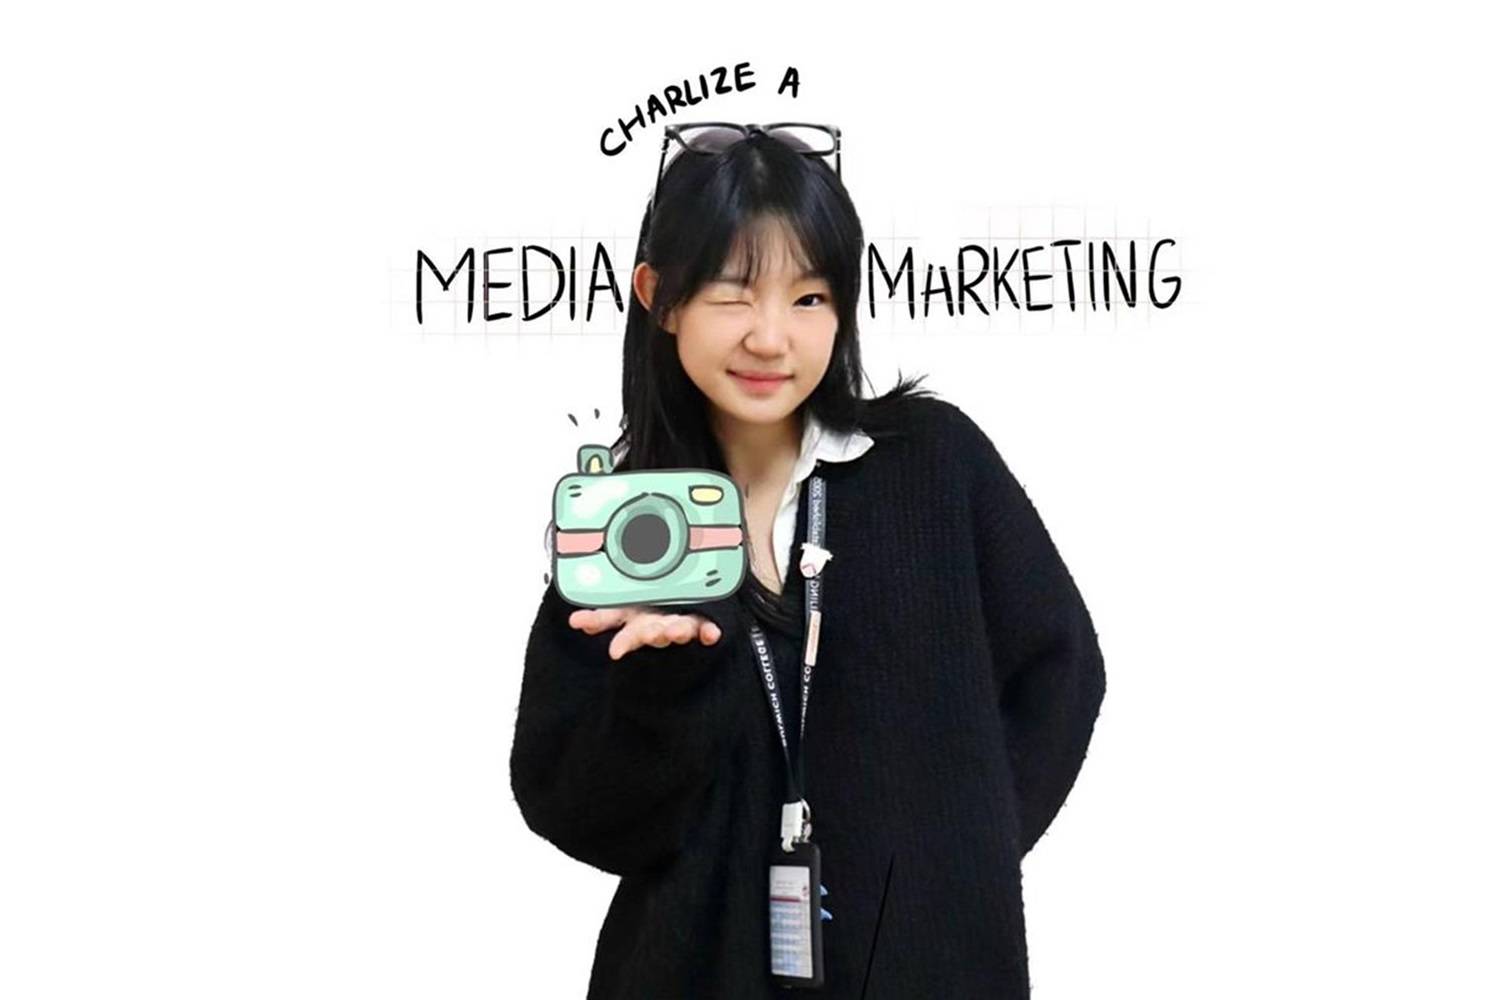 媒体和市场学生代表：Charlize A​​​​​​​